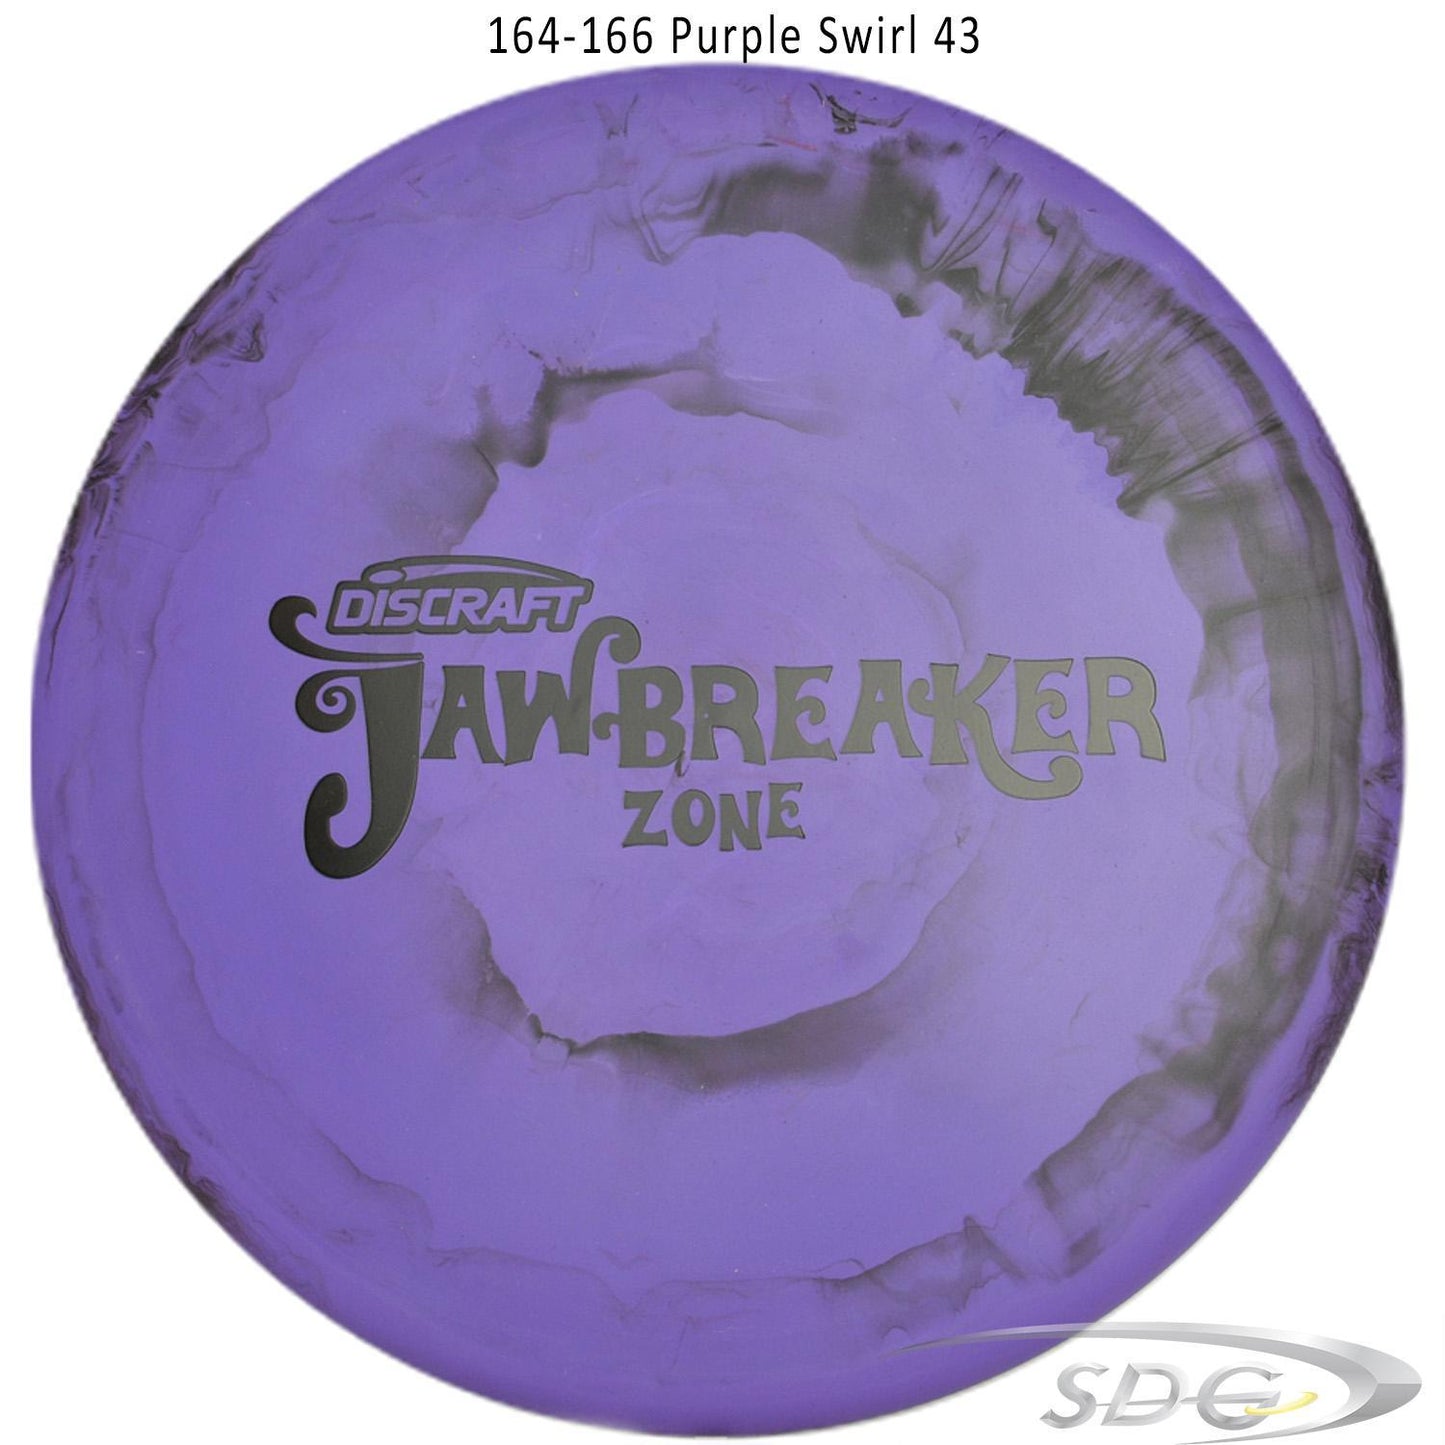 discraft-jawbreaker-zone-disc-golf-putter 164-166 Purple Swirl 43